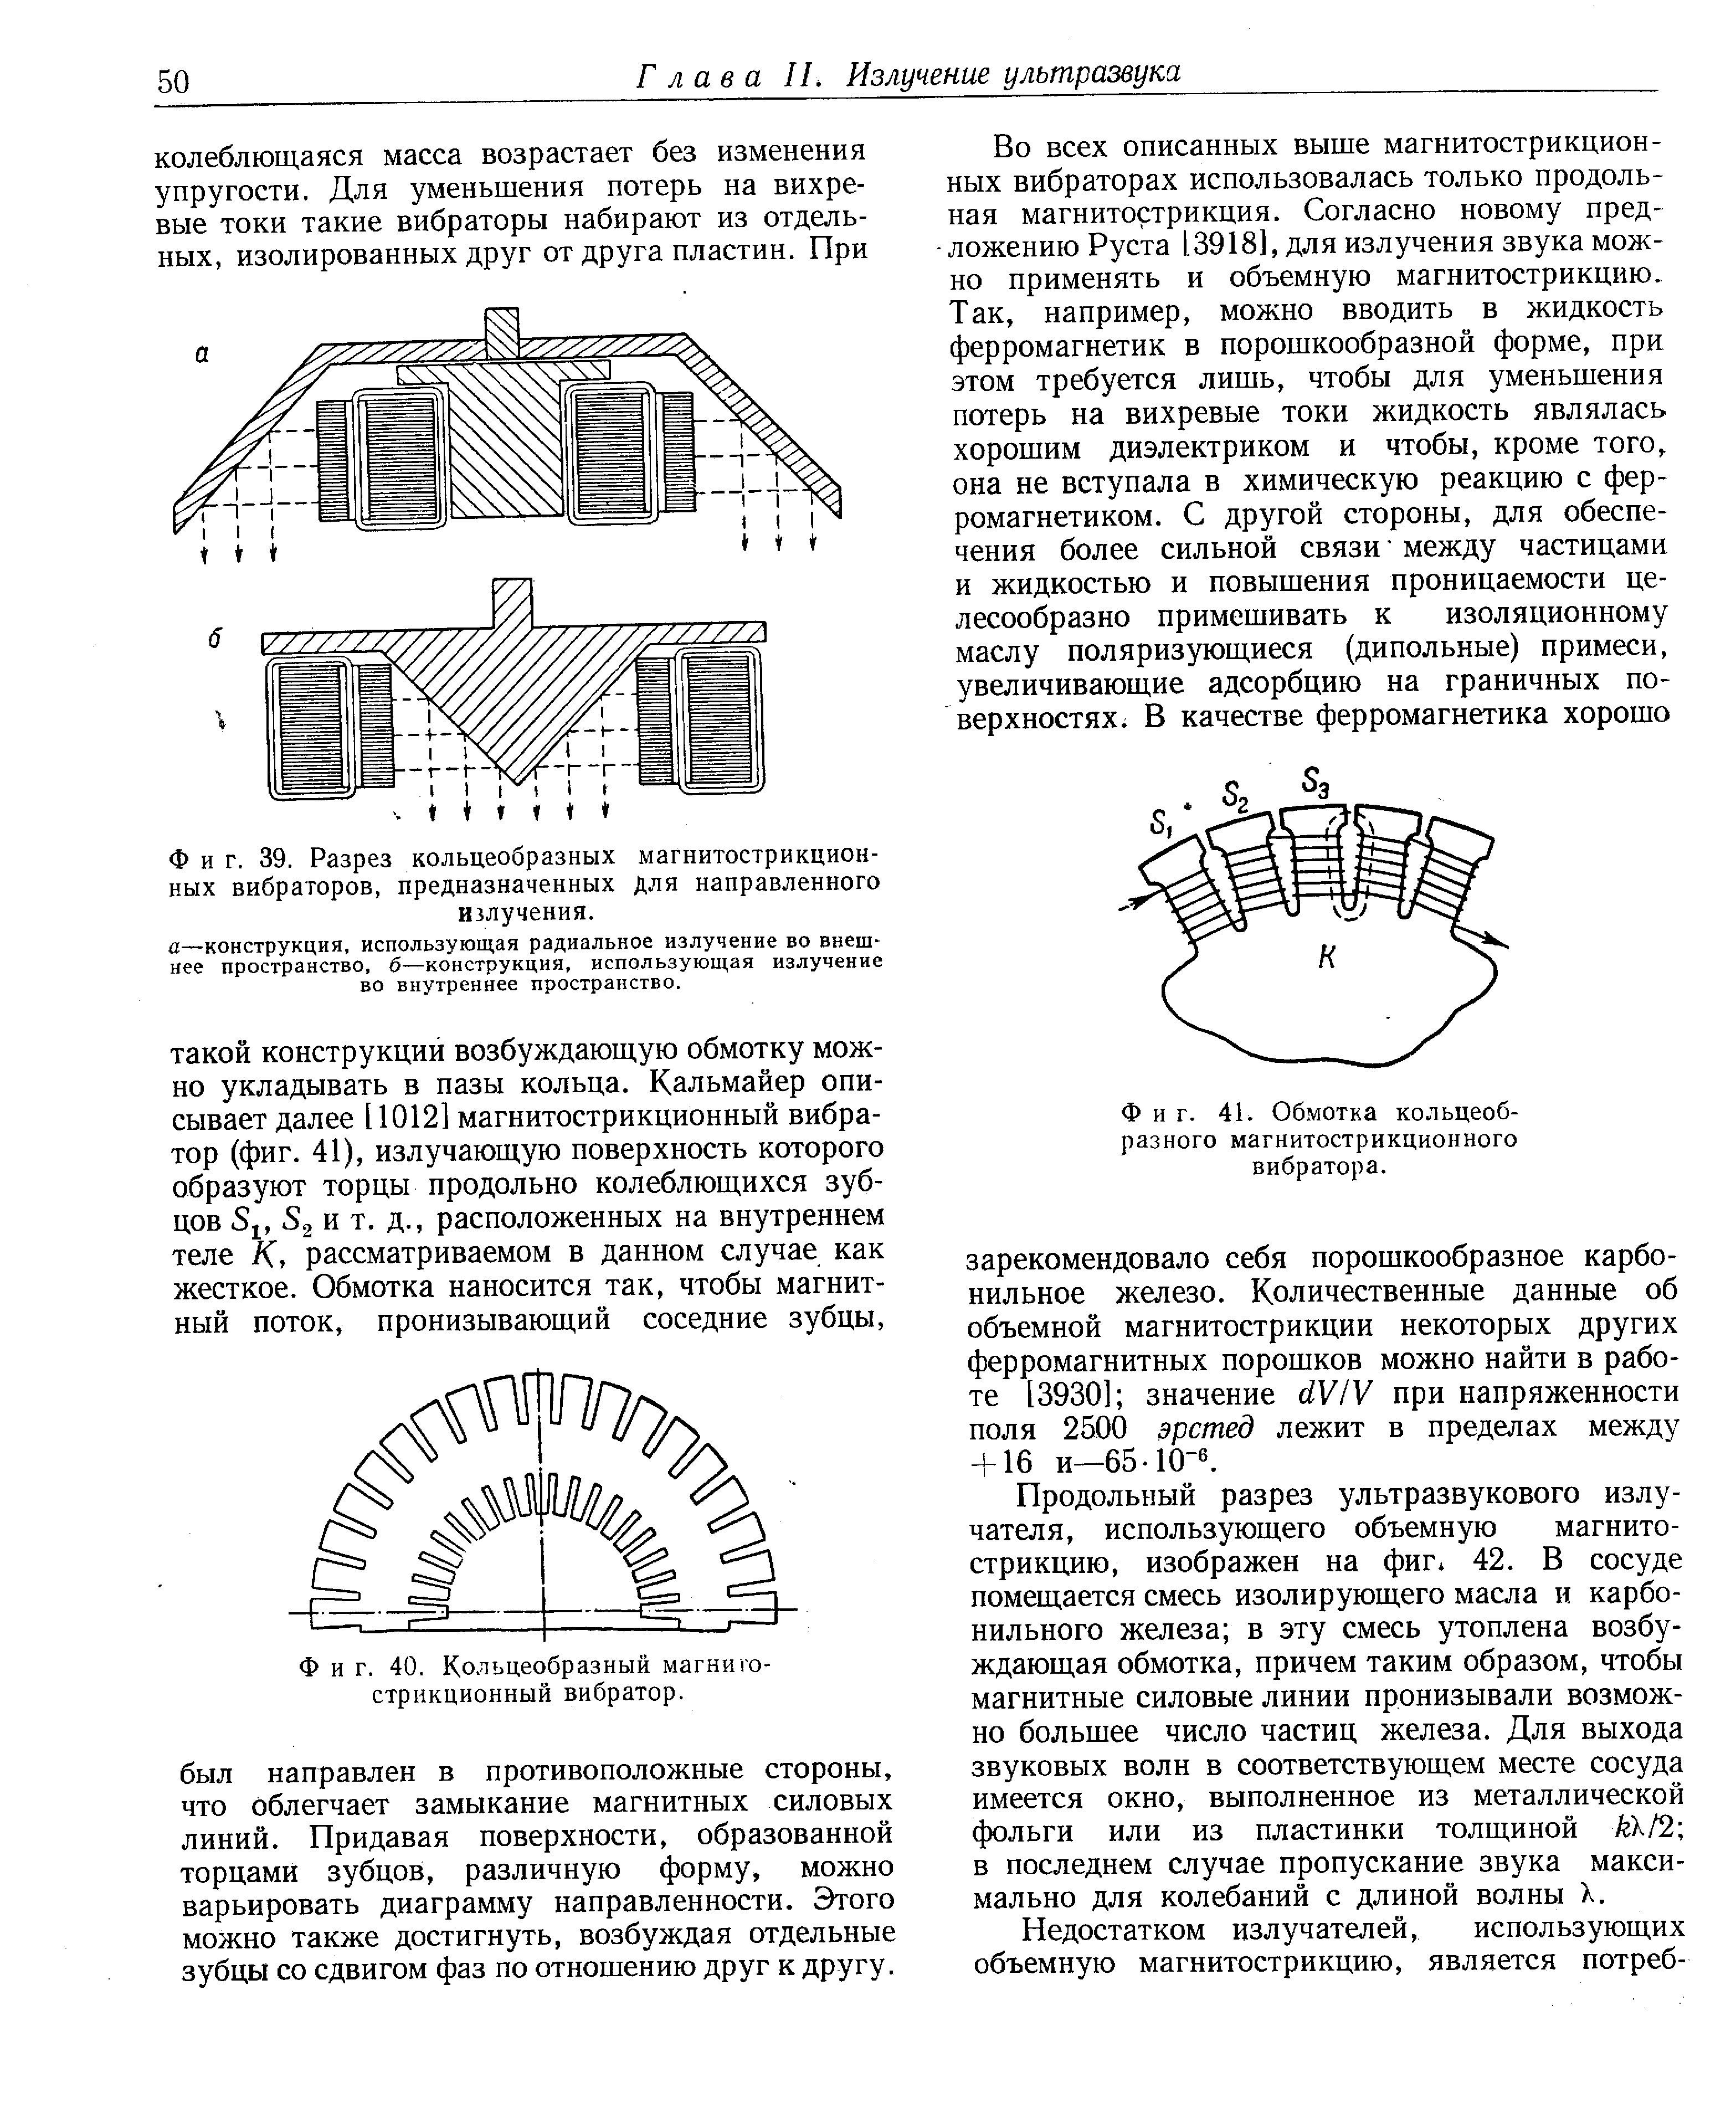 Фиг. 39. Разрез кольцеобразных магнитострикционных вибраторов, предназначенных Для направленного излучения.
